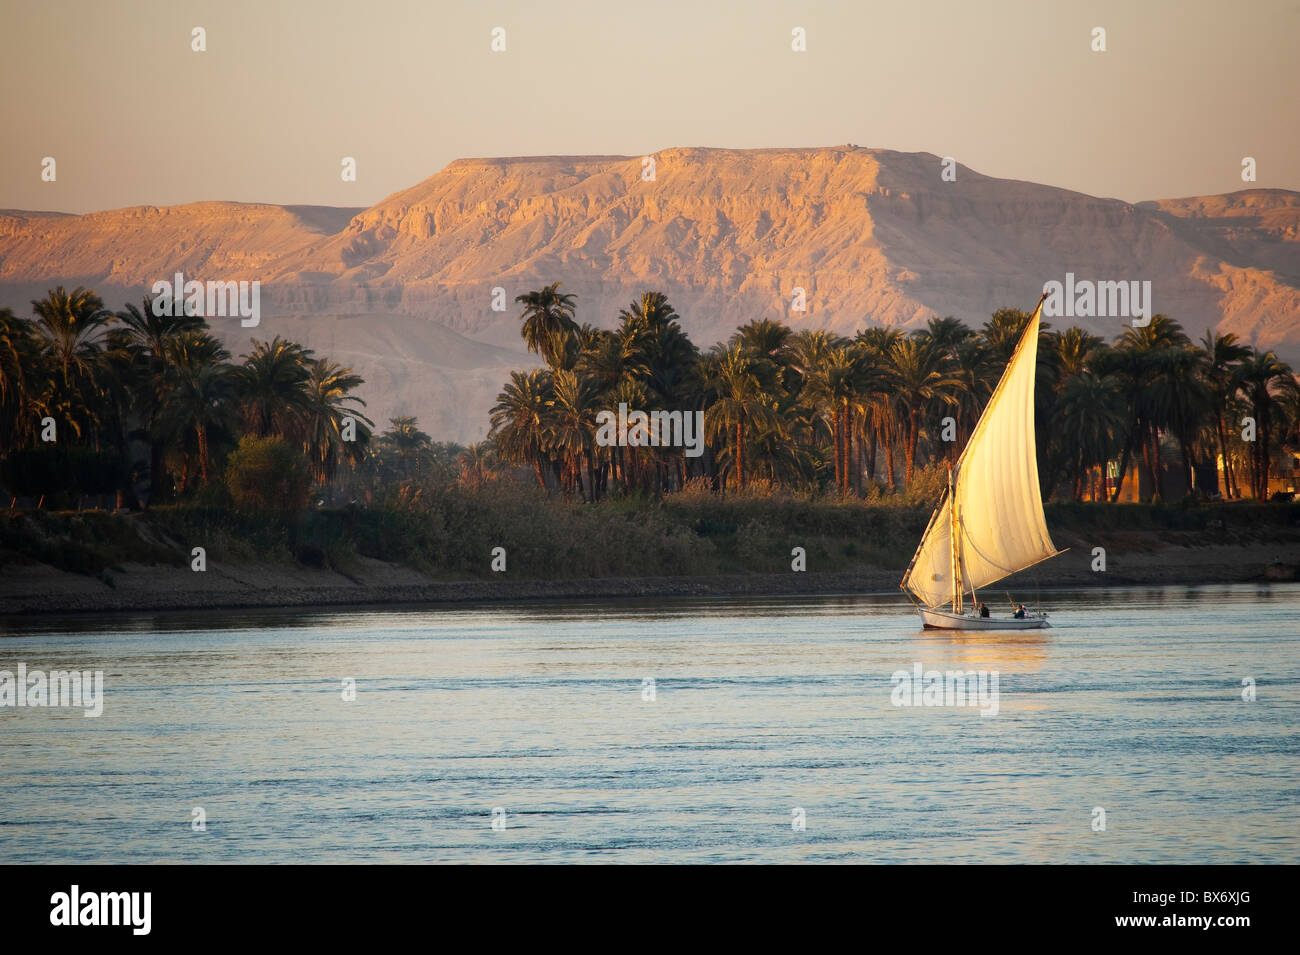 Une magnifique et belle image d'un voilier traditionnel égyptien appelé une felouque sur le Nil au coucher du soleil avec les montagnes derrière Banque D'Images